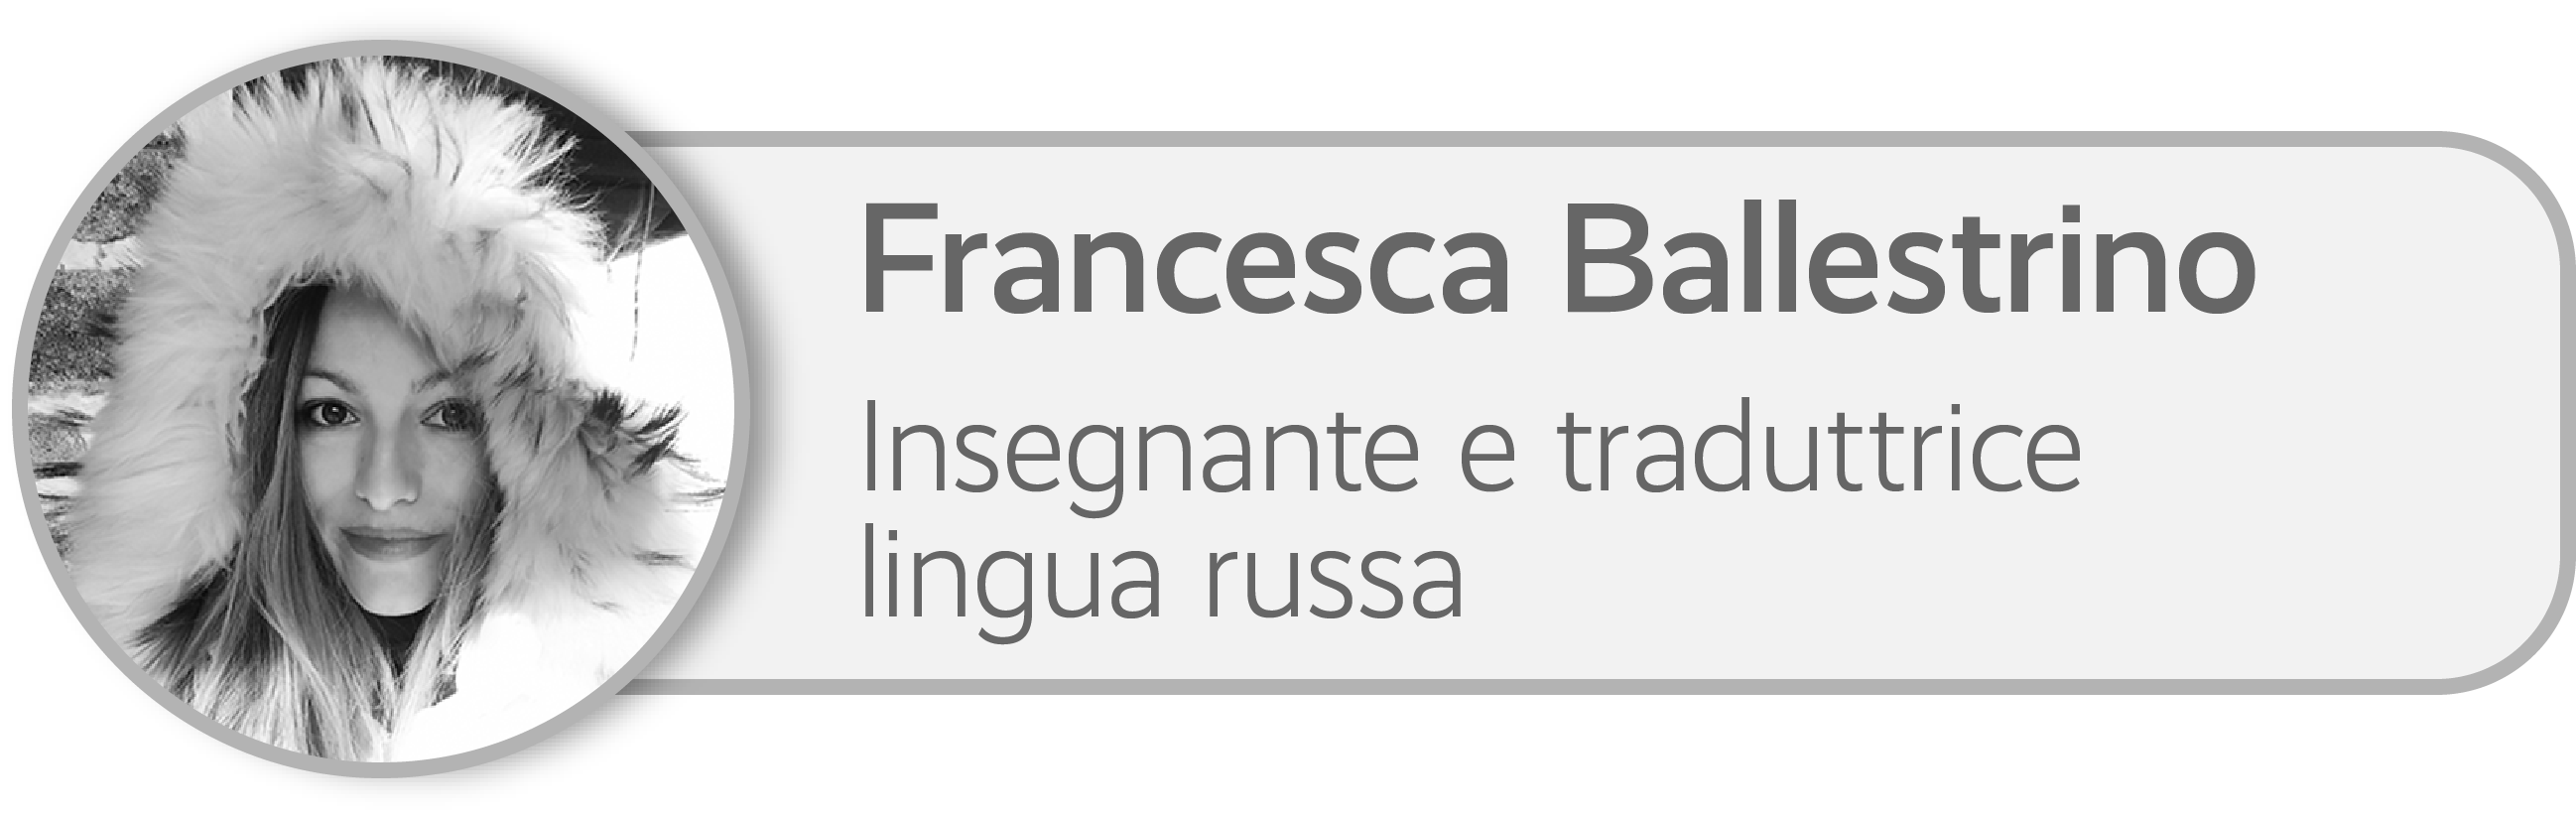 Francesca Ballestrino